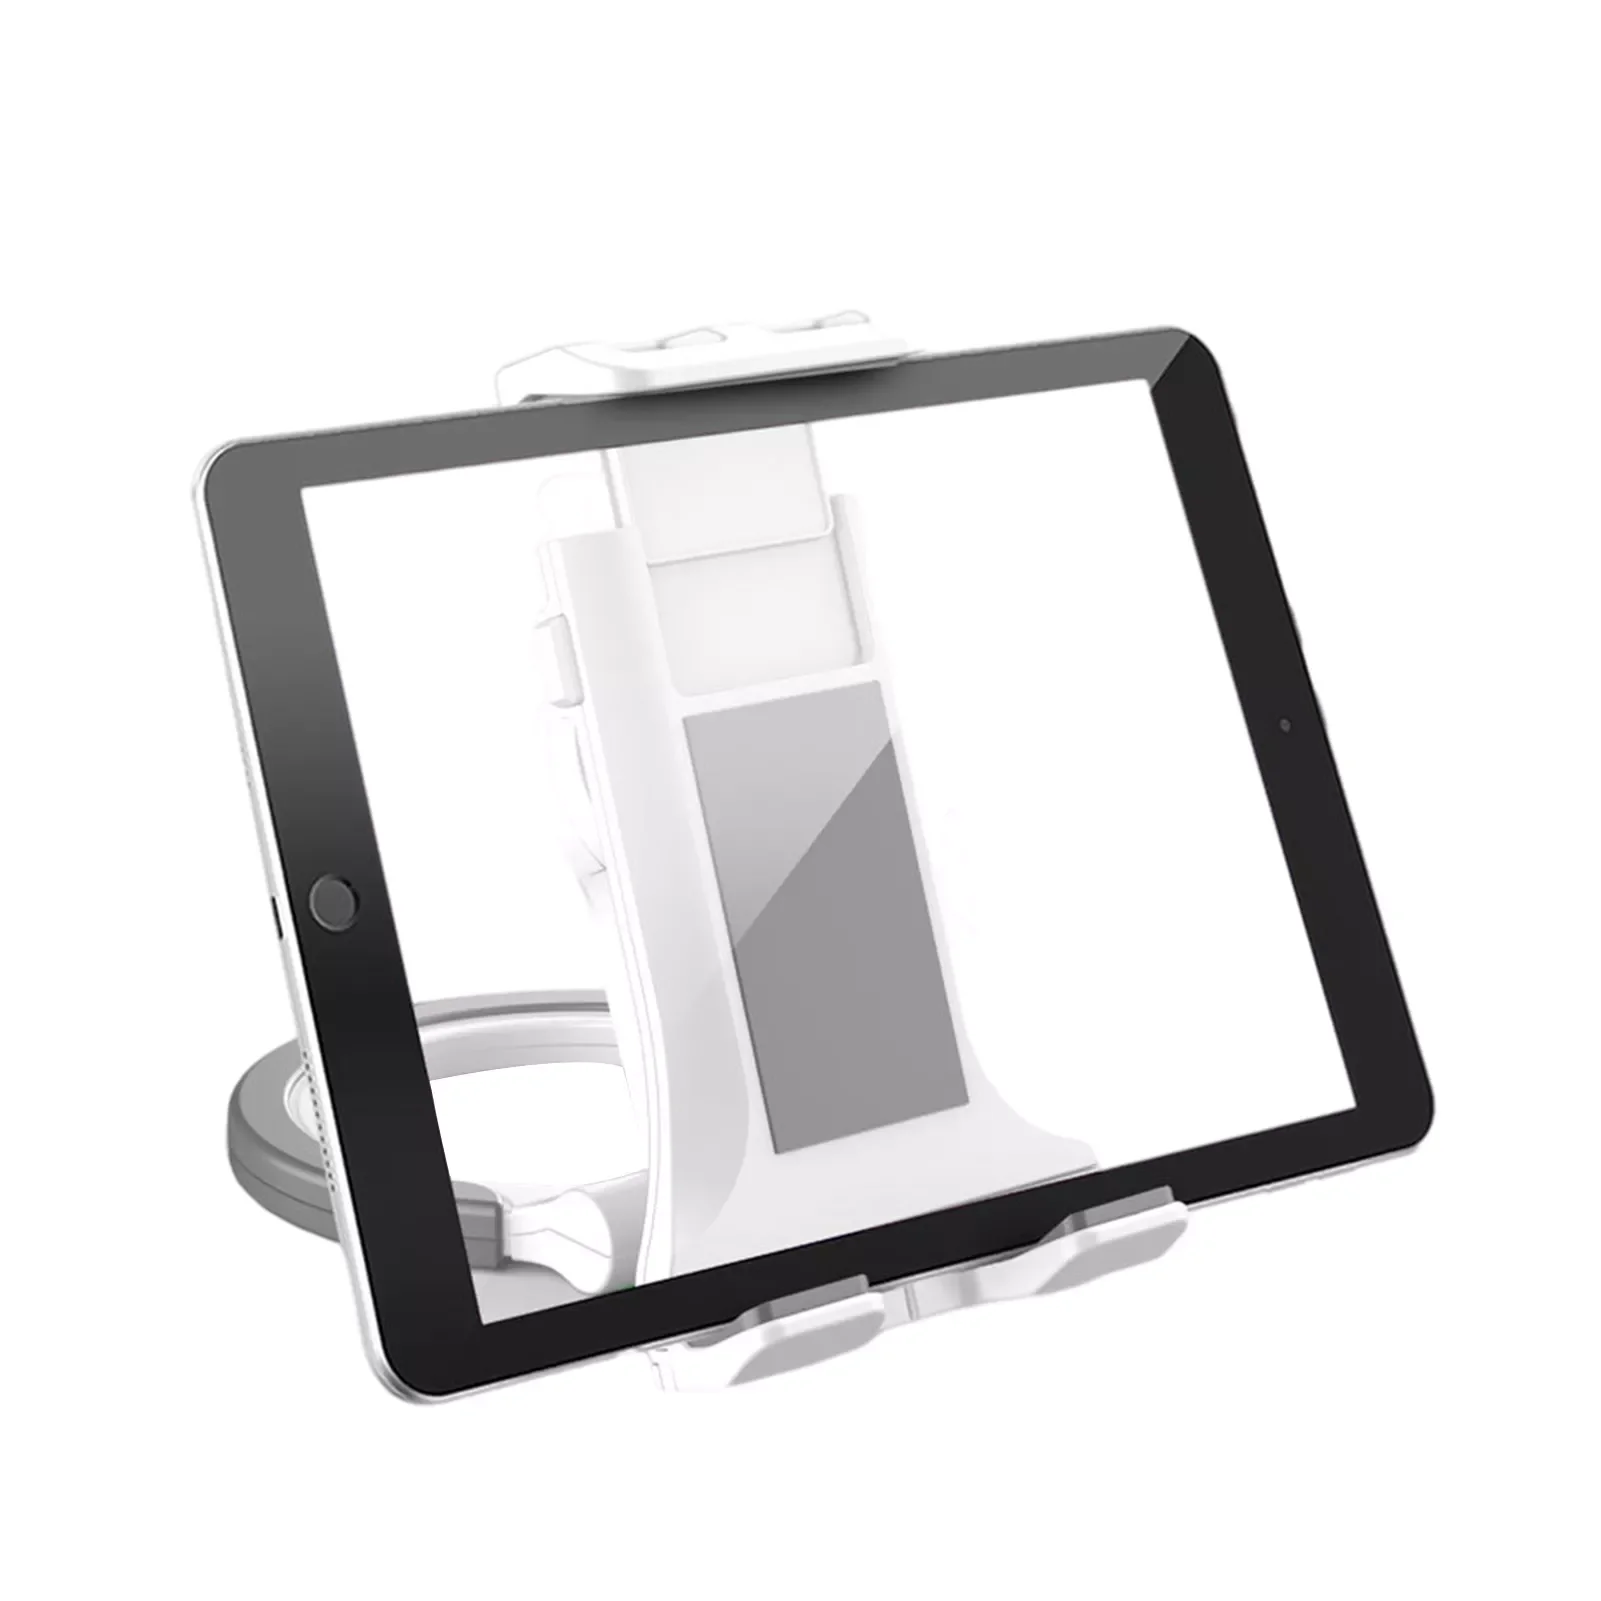 Tablet Holder For Desk Tablet Stand 360Rotating Adjustable Phone Mount With Stable Base Desktop Stand Holder Wall Mount